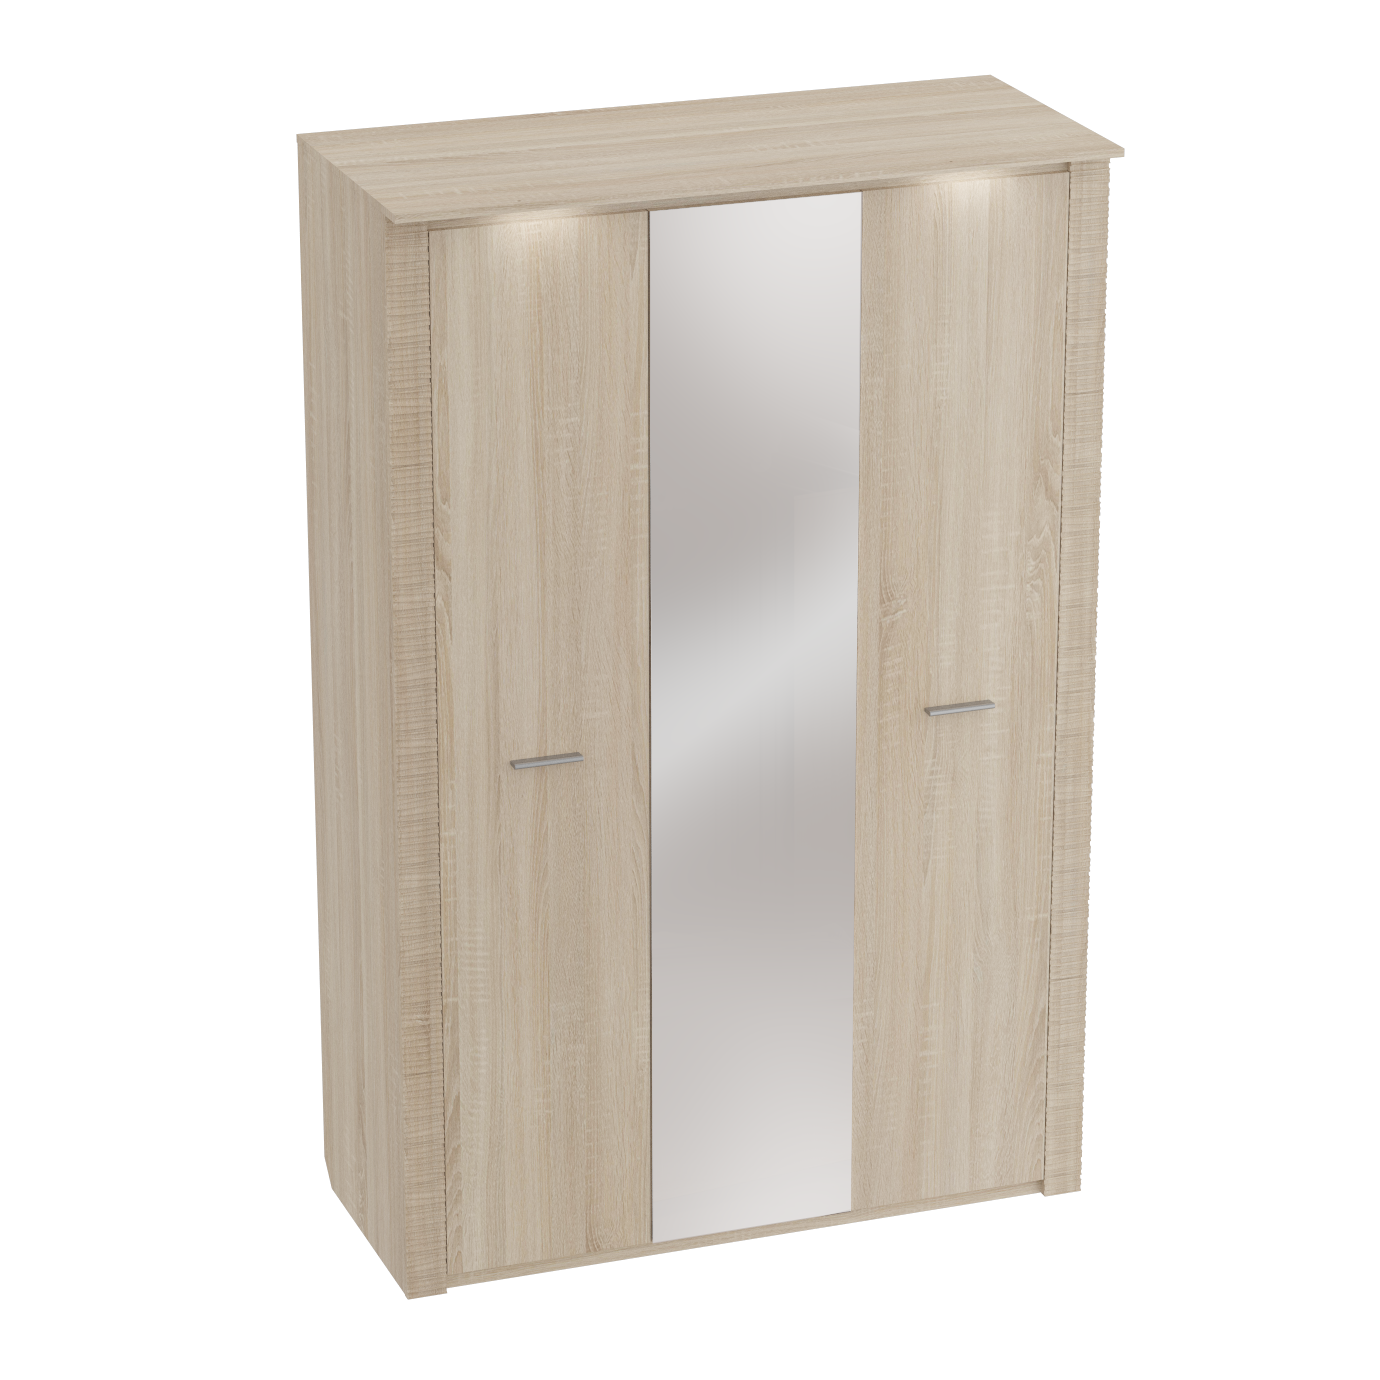 Шкаф 3-дверный с подсветкой Элана Дуб сонома (глубина 65 см)